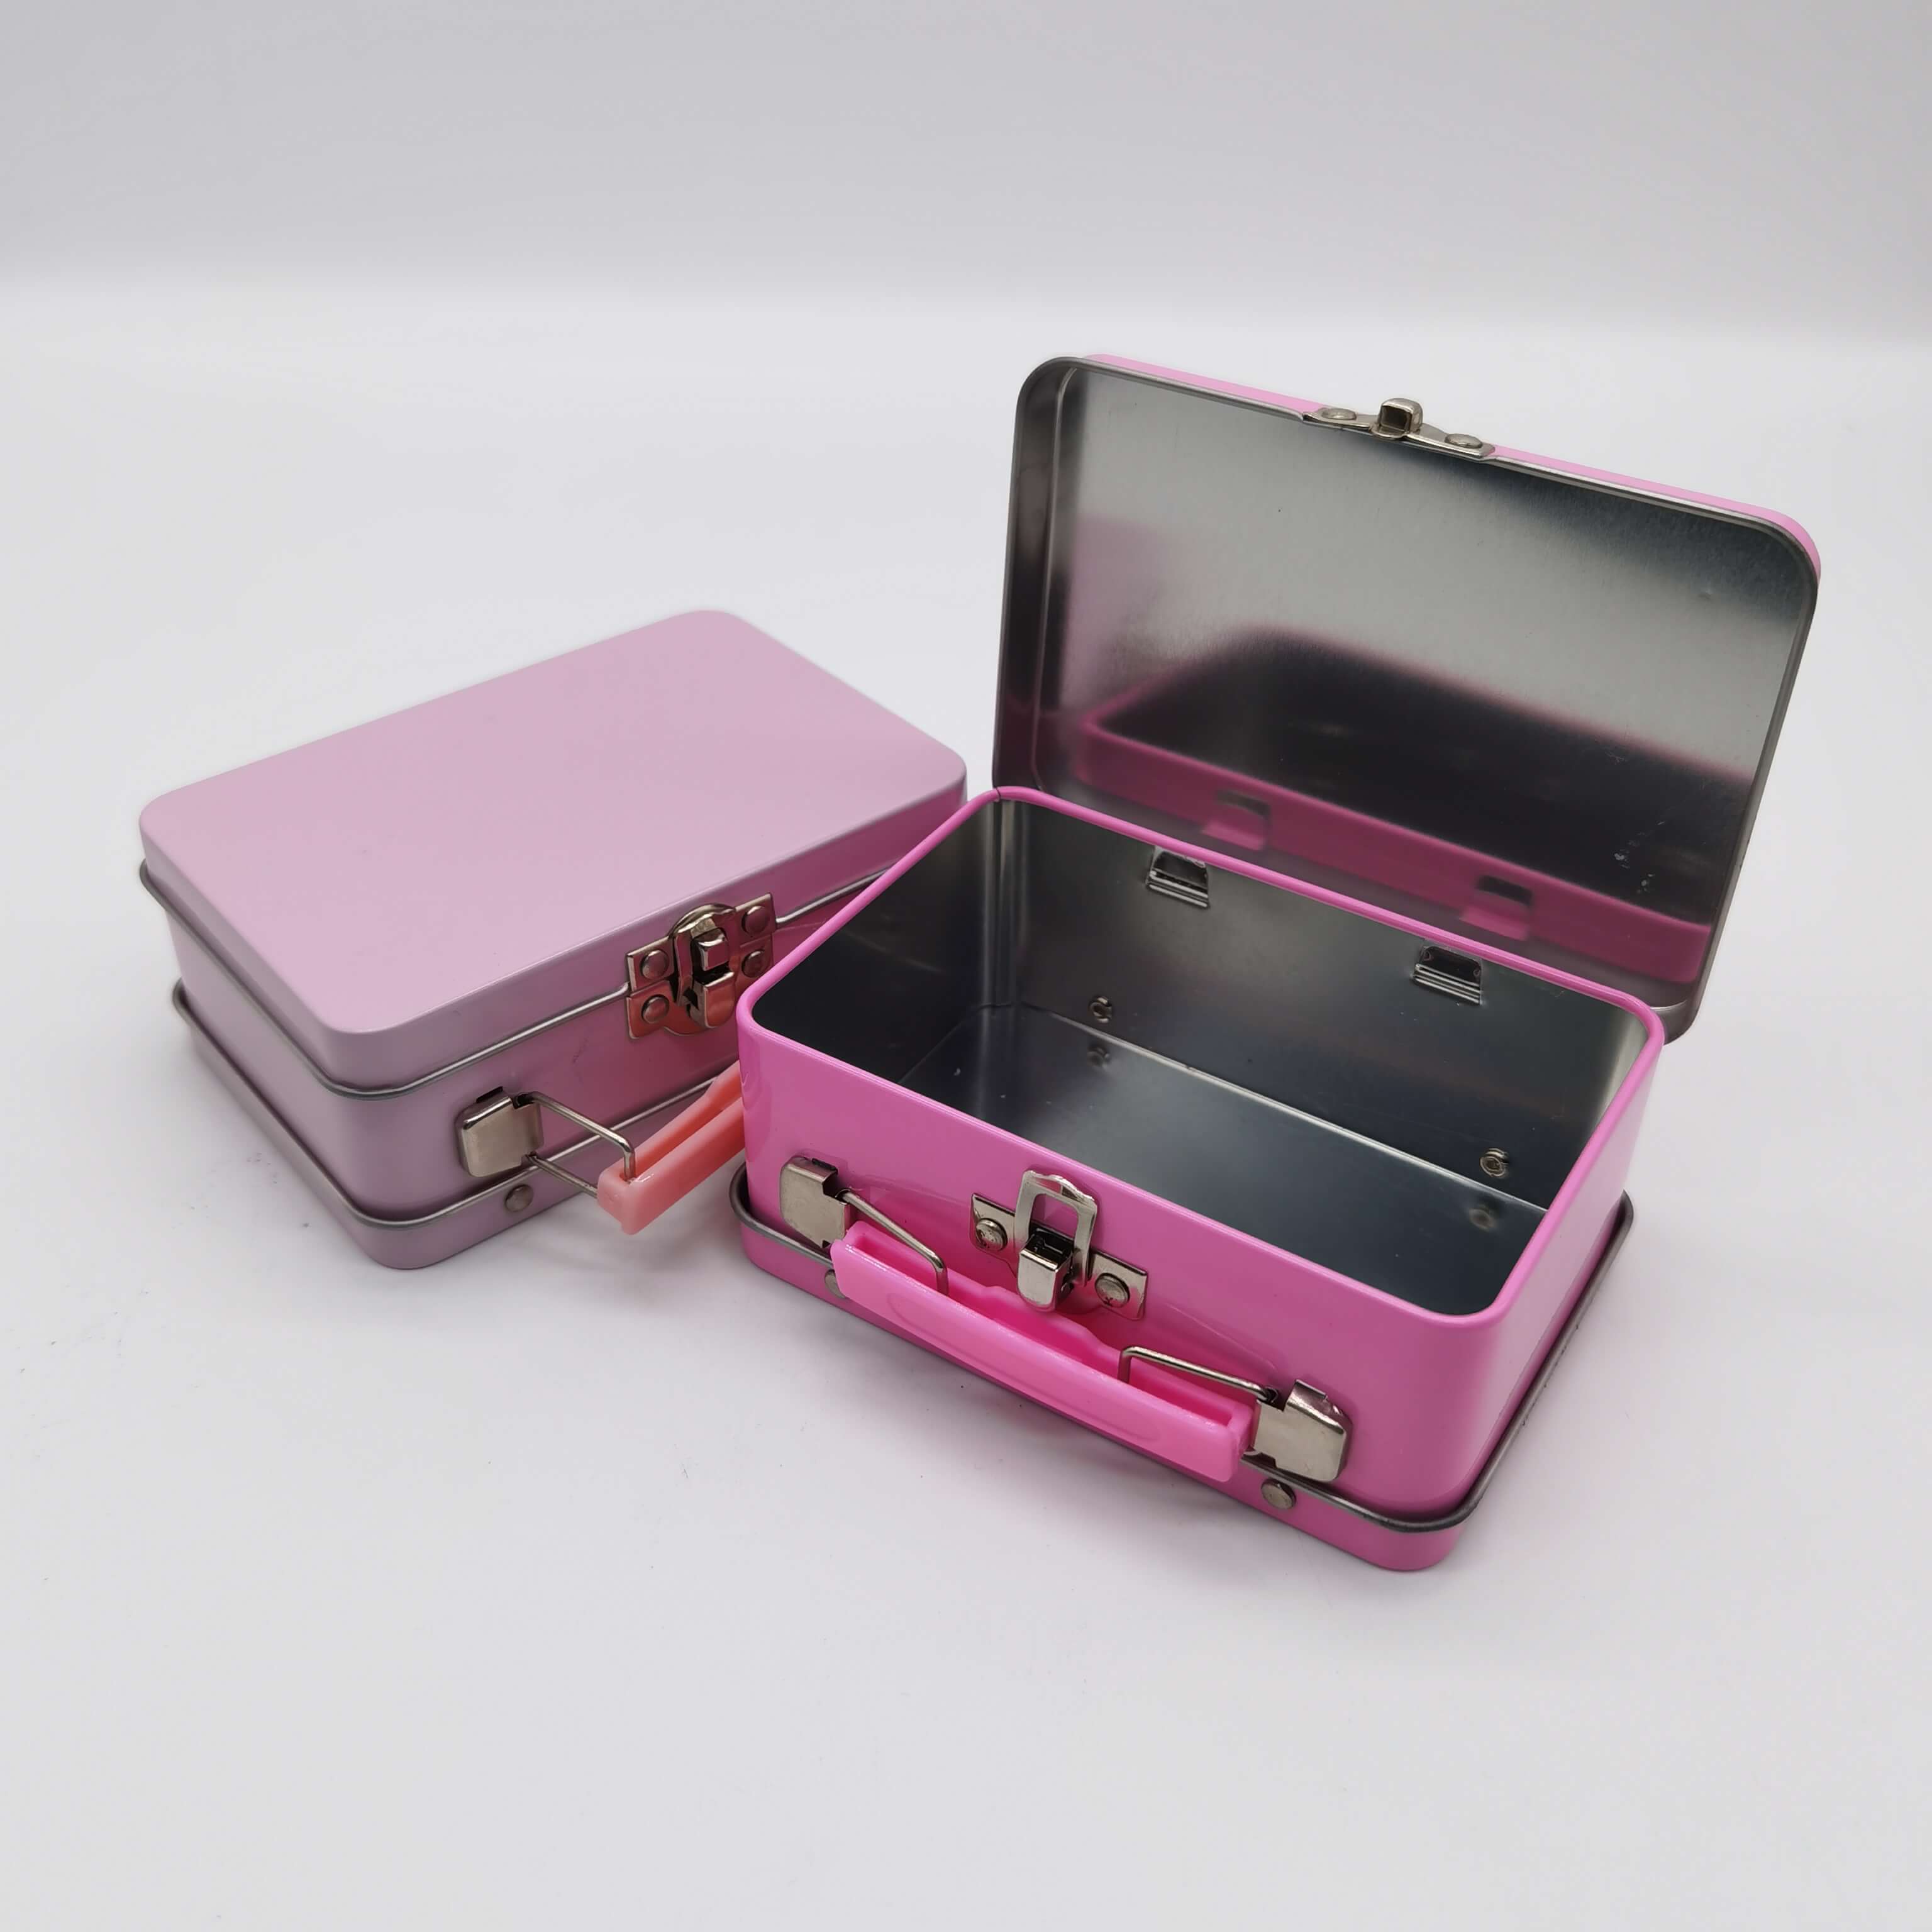 Lip Gloss packing iron box, hand-held iron box, hand-held can, tin box